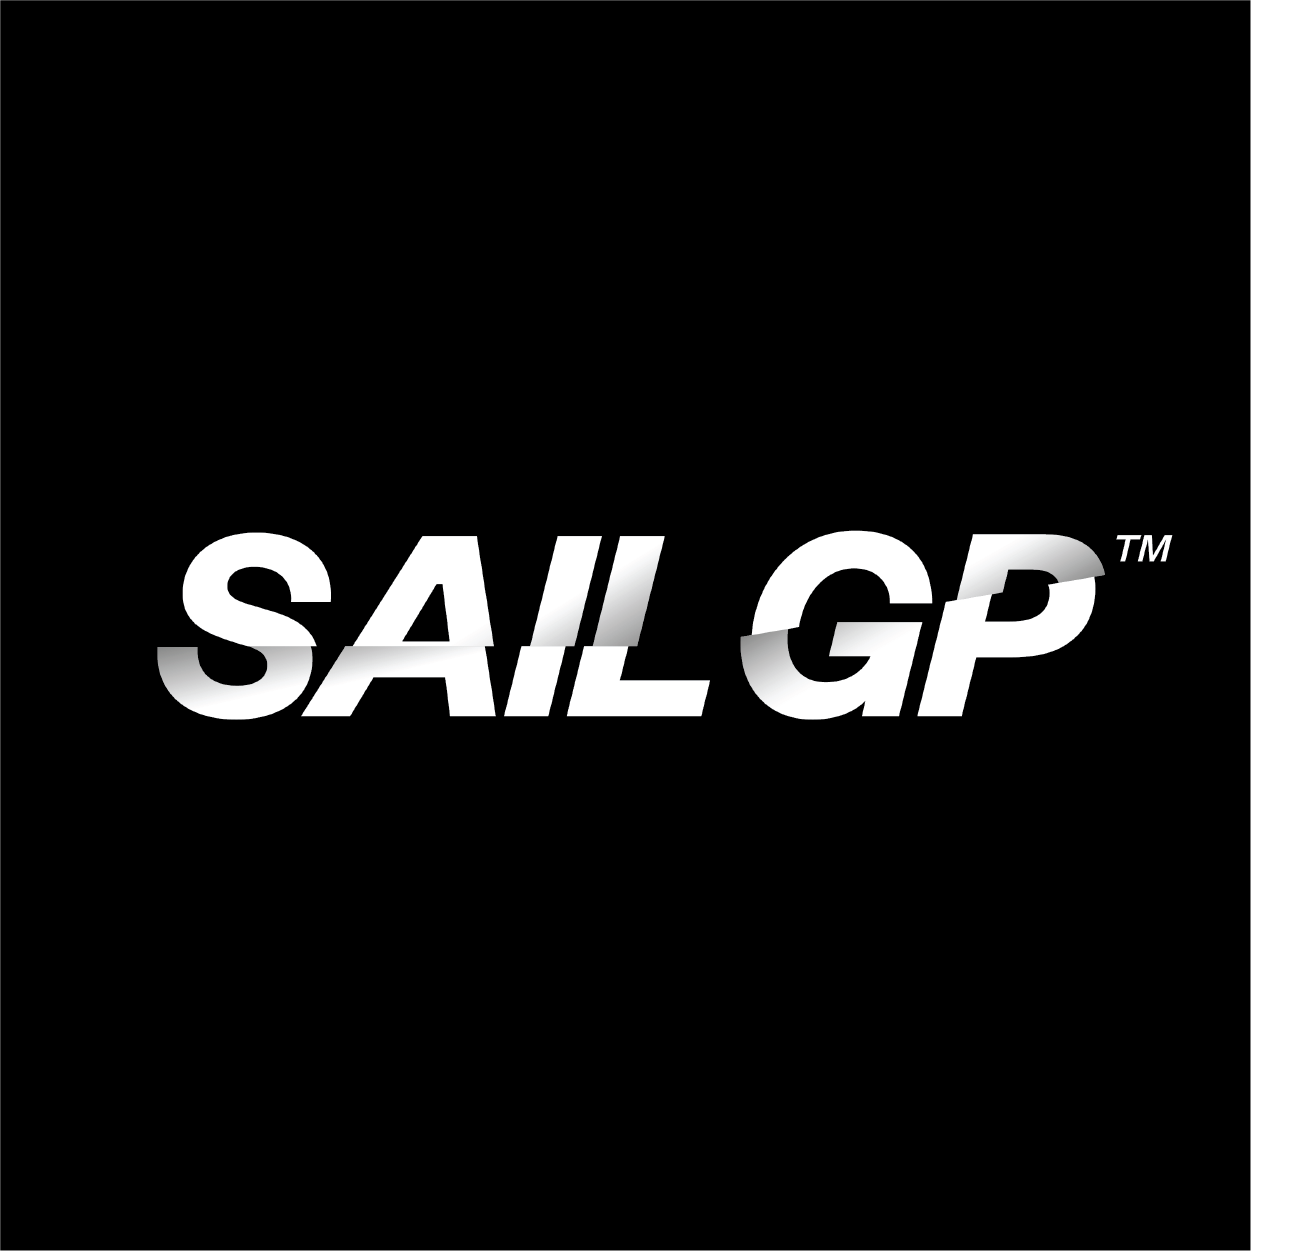 Sailgp logo